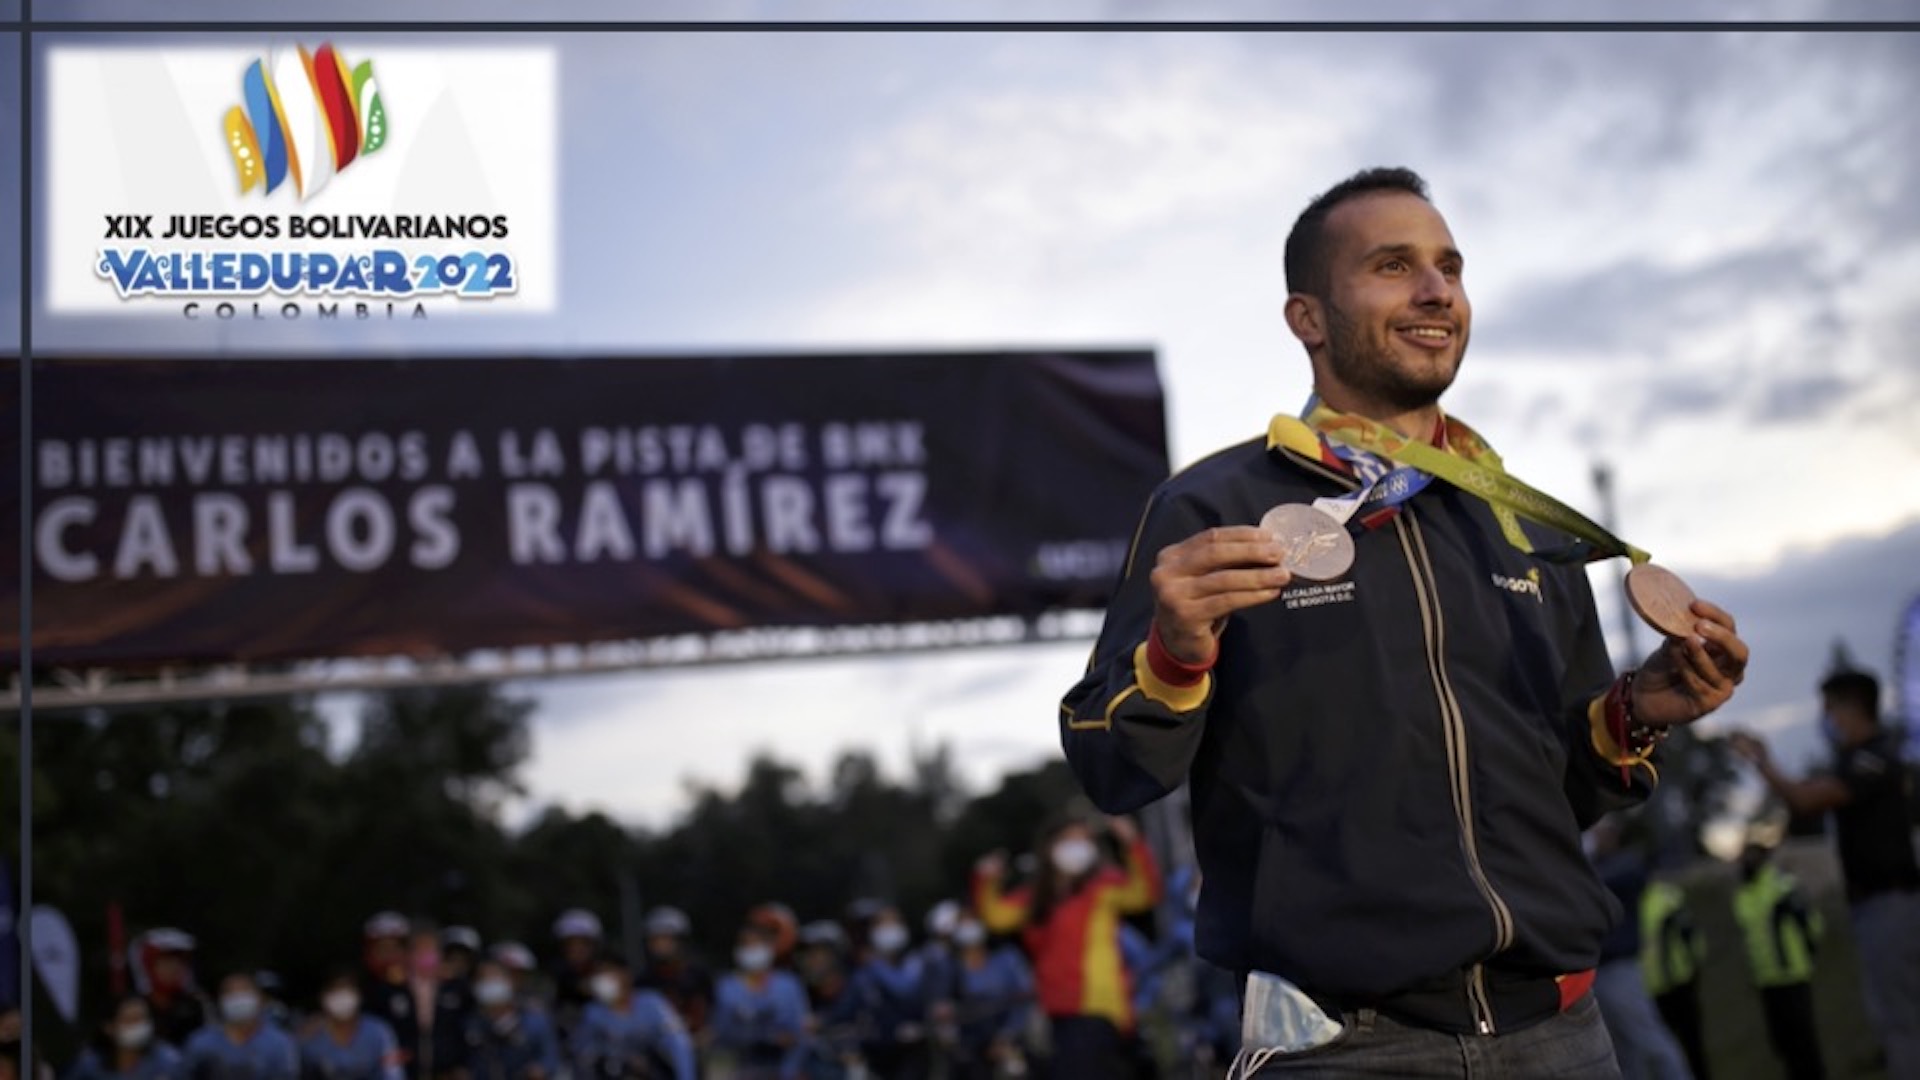 Por sobreventa de tiquetes, Carlos Ramírez casi se queda sin viajar a Valledupar para la inauguración de los Juegos Bolivarianos 2022